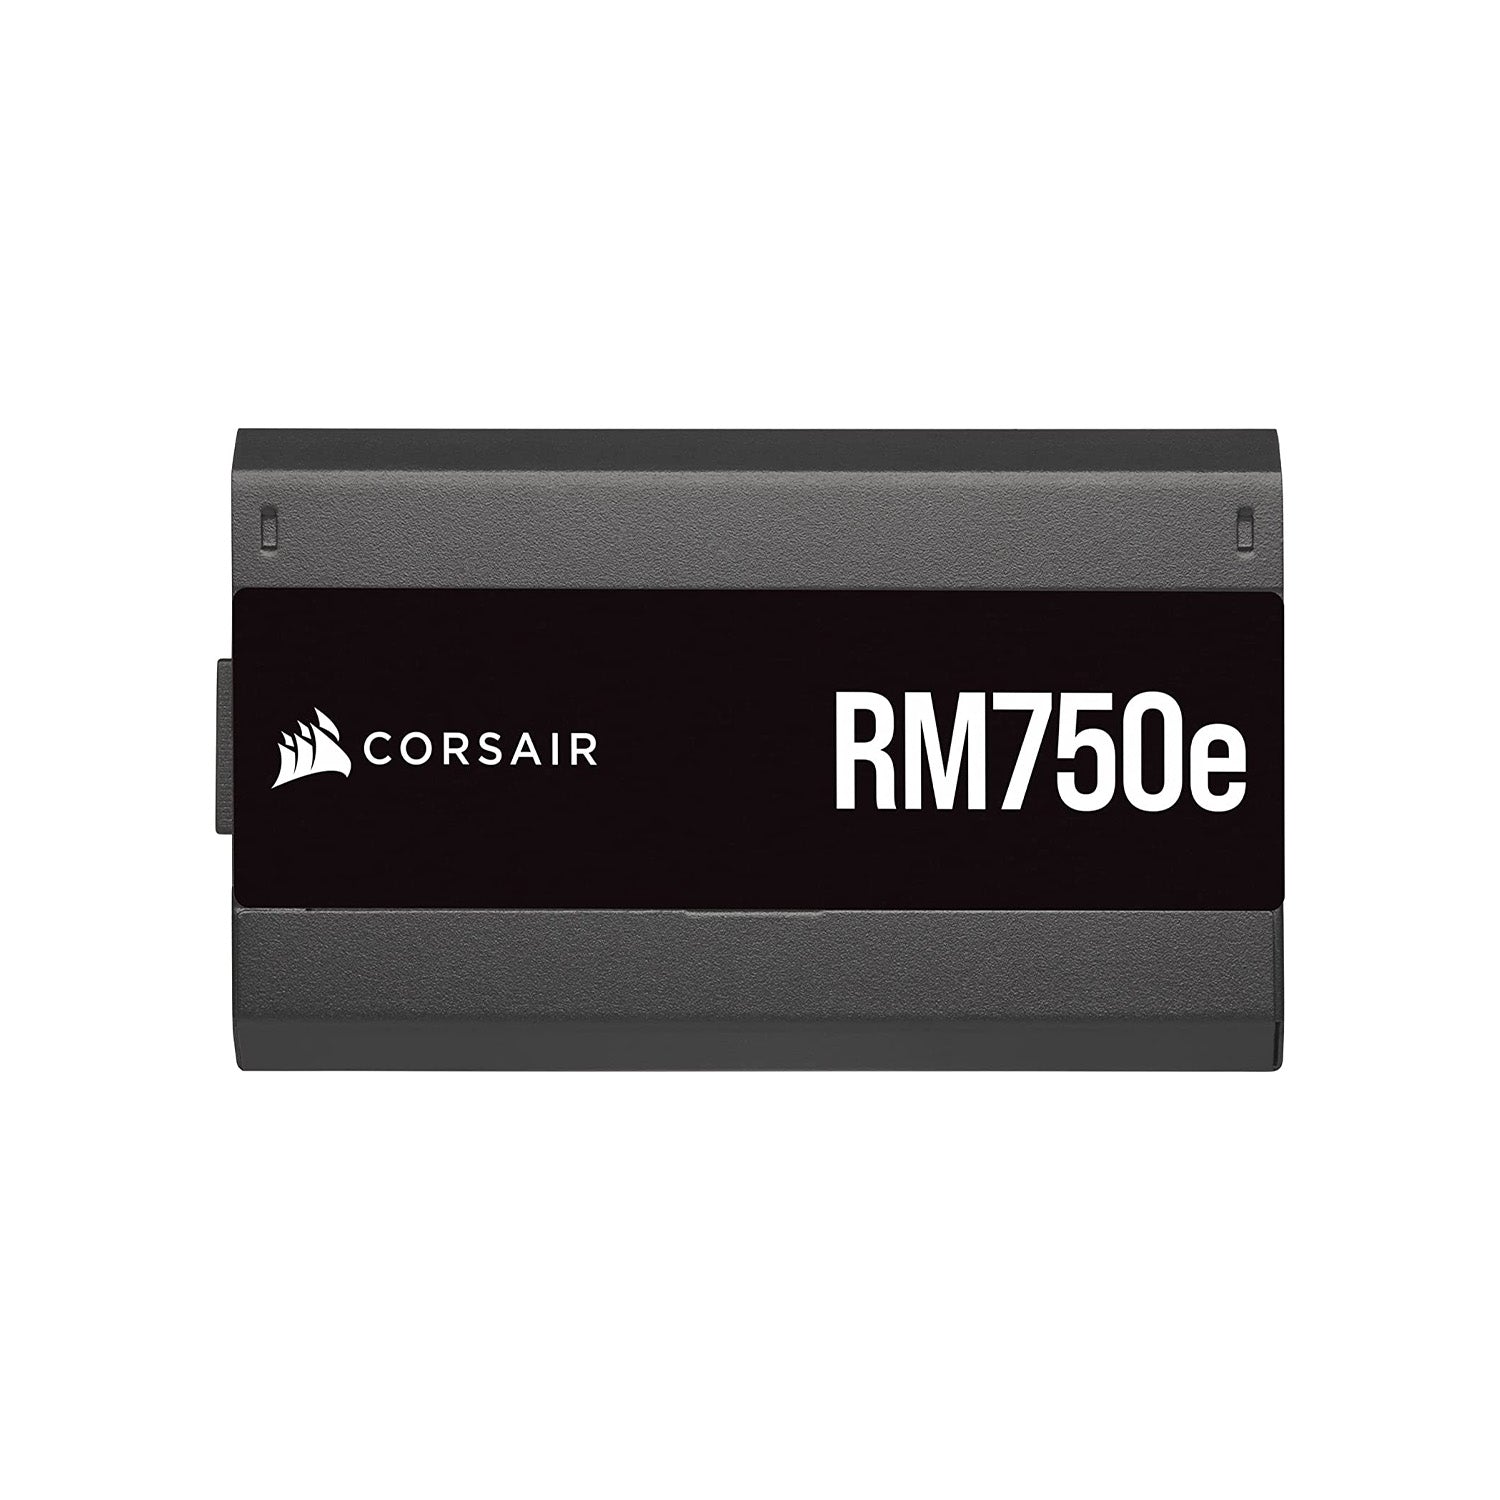 CORSAIR RMe Series, RM 750e, 750Watt